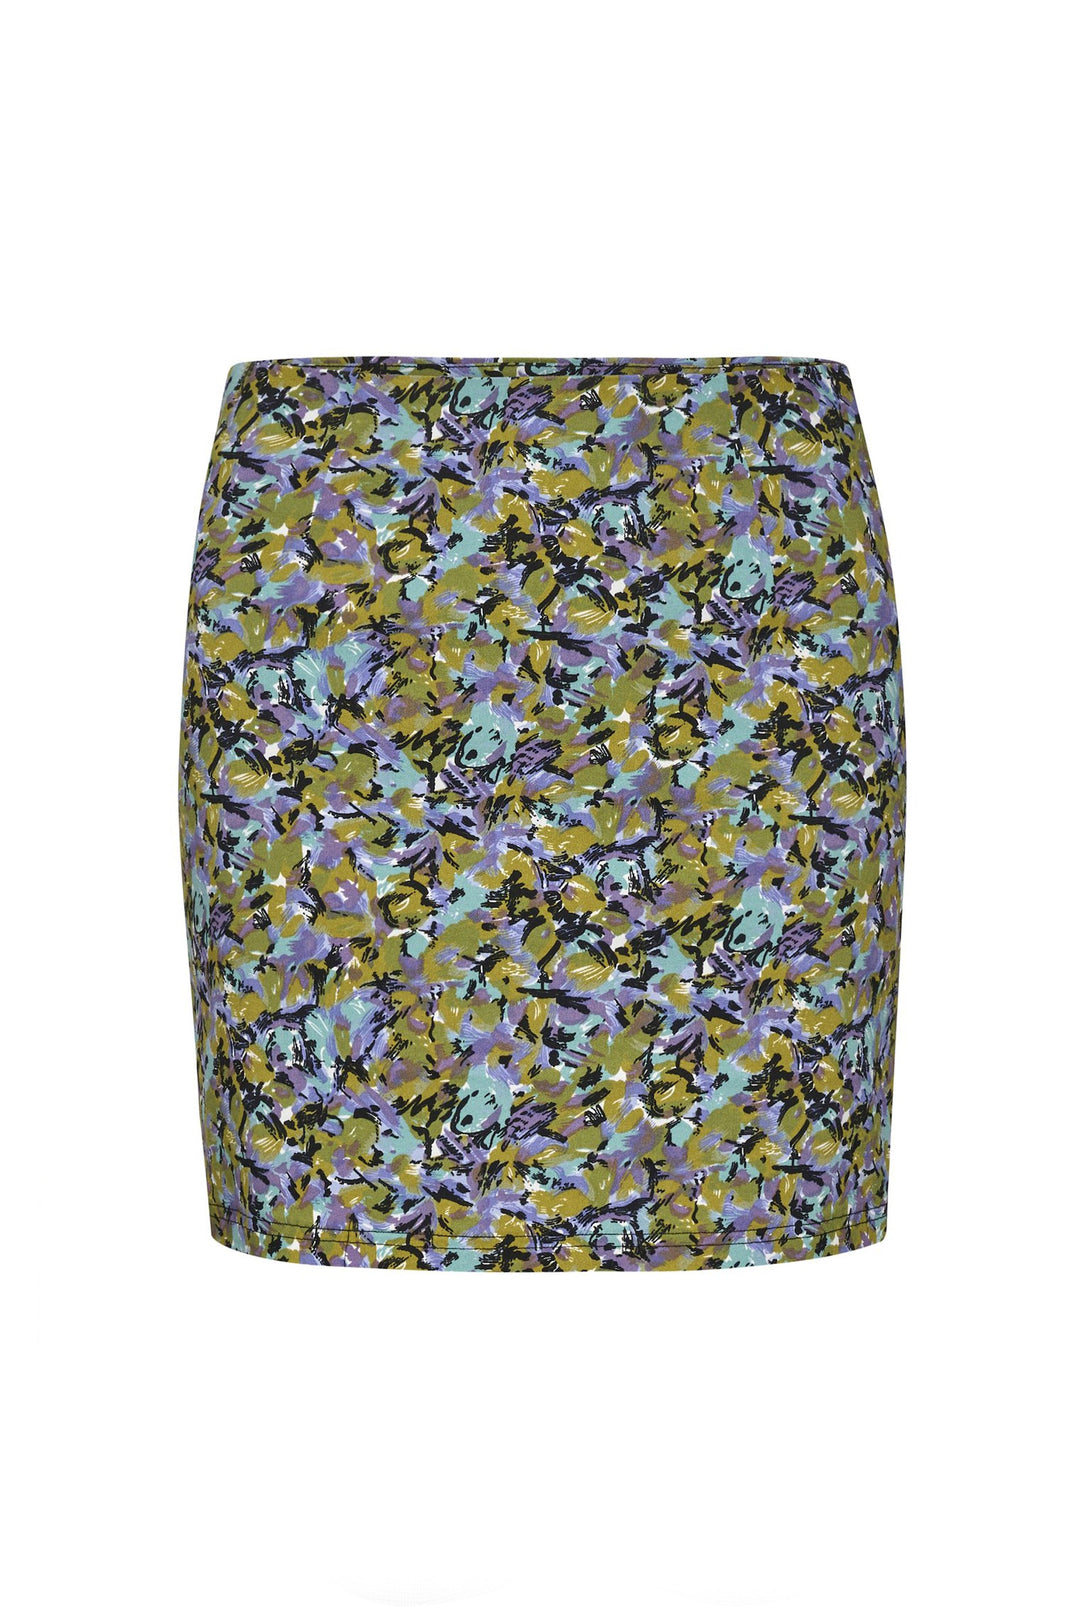 Gestuz Arina Skirt - Multi Coloured